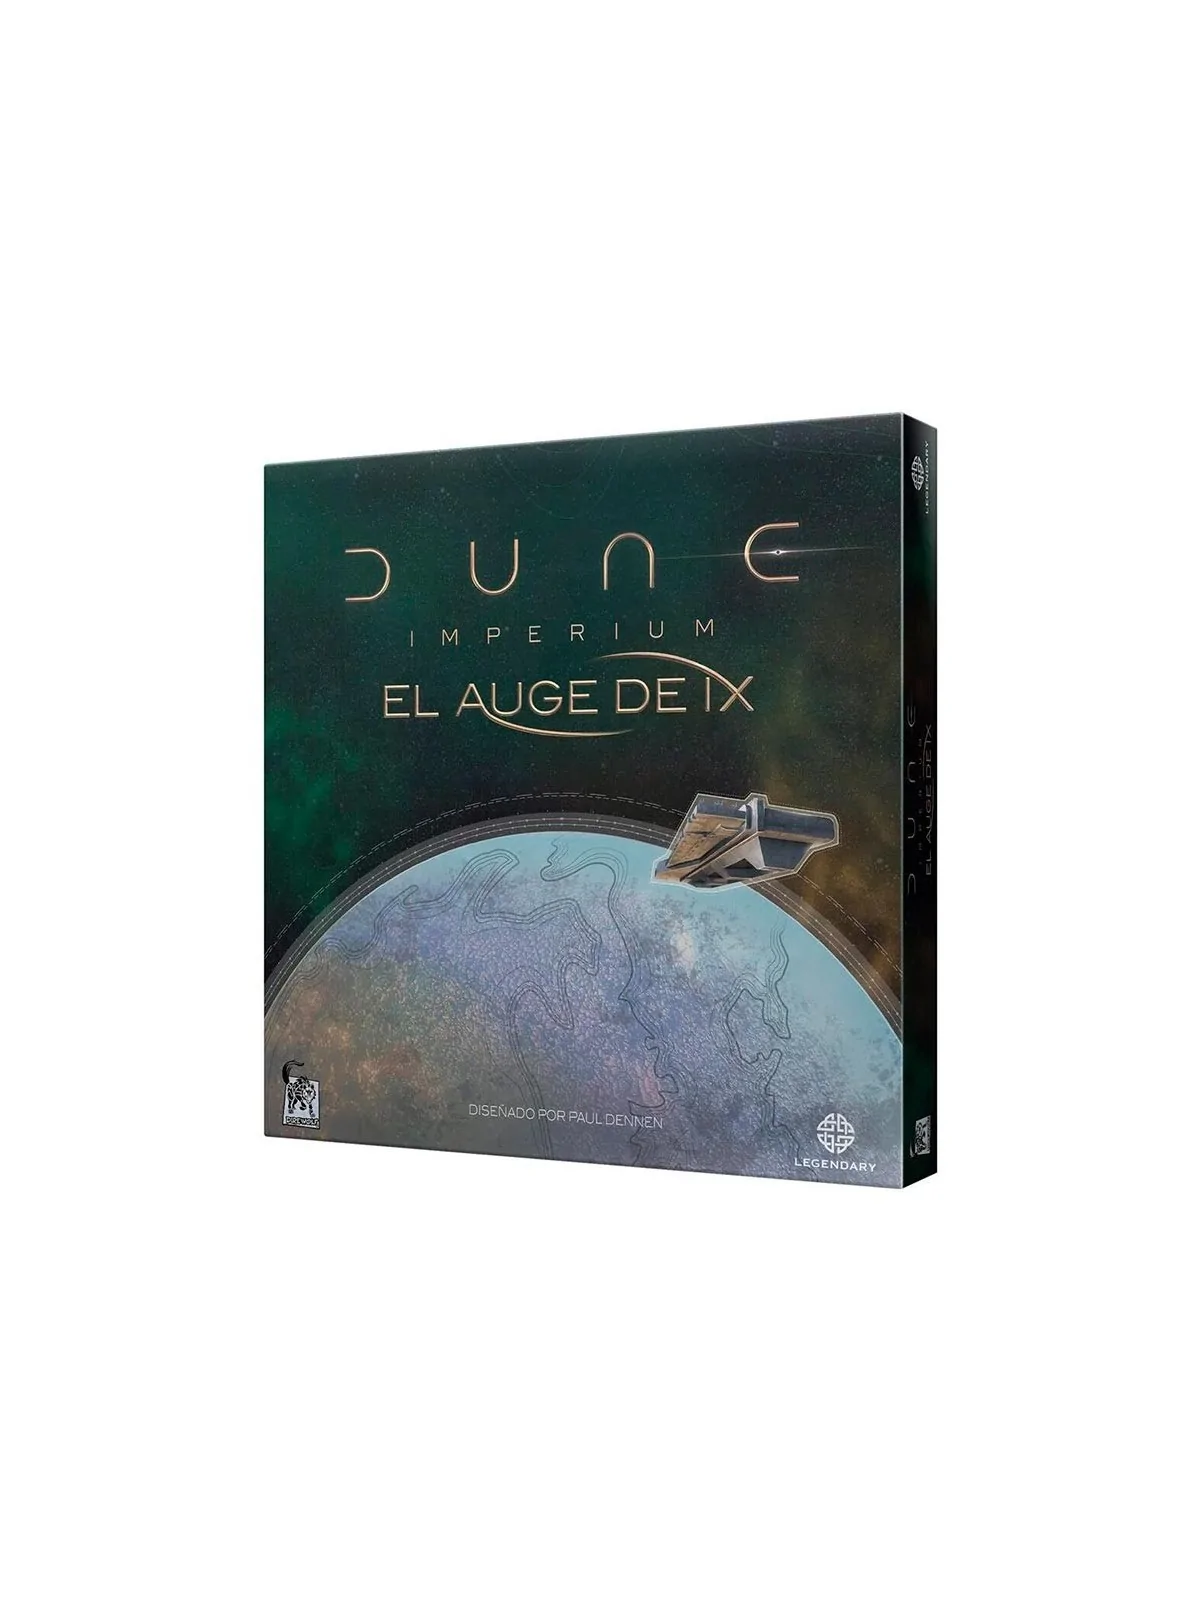 Comprar Dune Imperium: El Auge de IX barato al mejor precio 35,99 € de